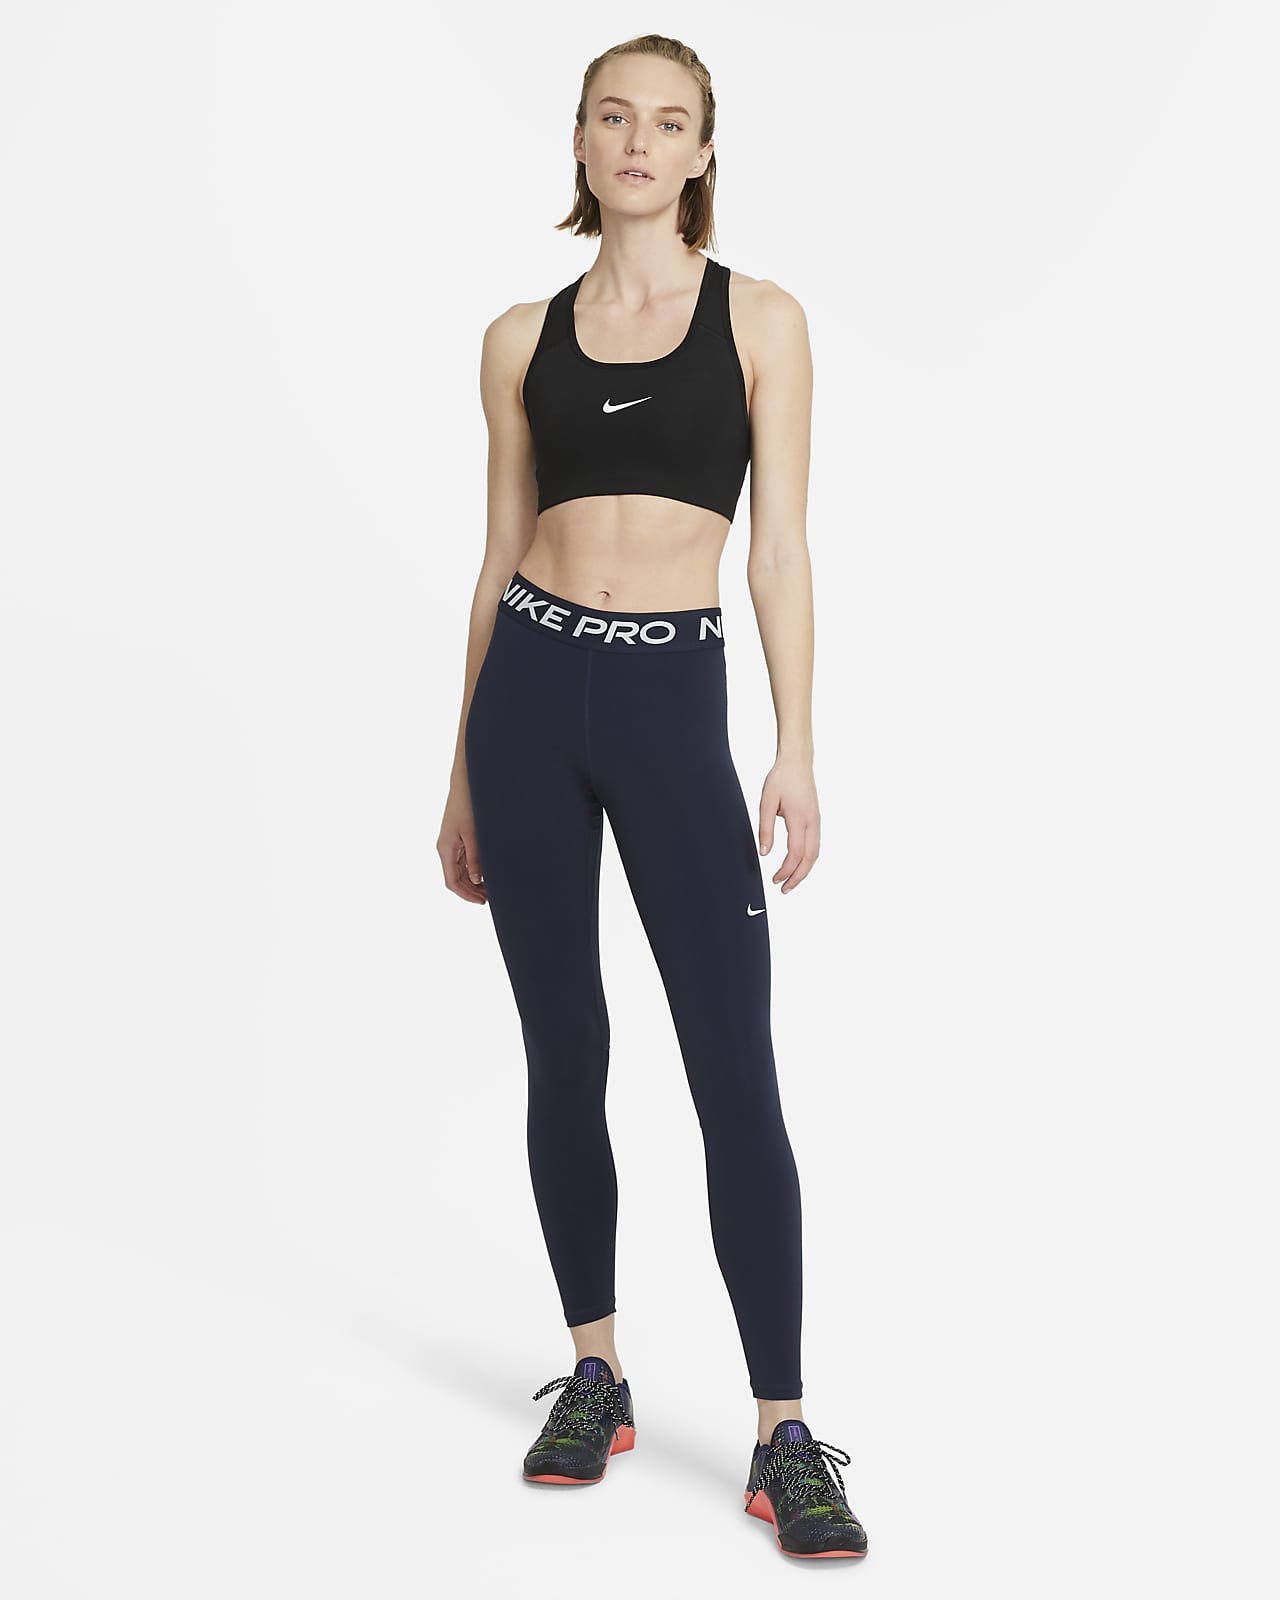 Comprar leggings y mallas para correr. Nike MX